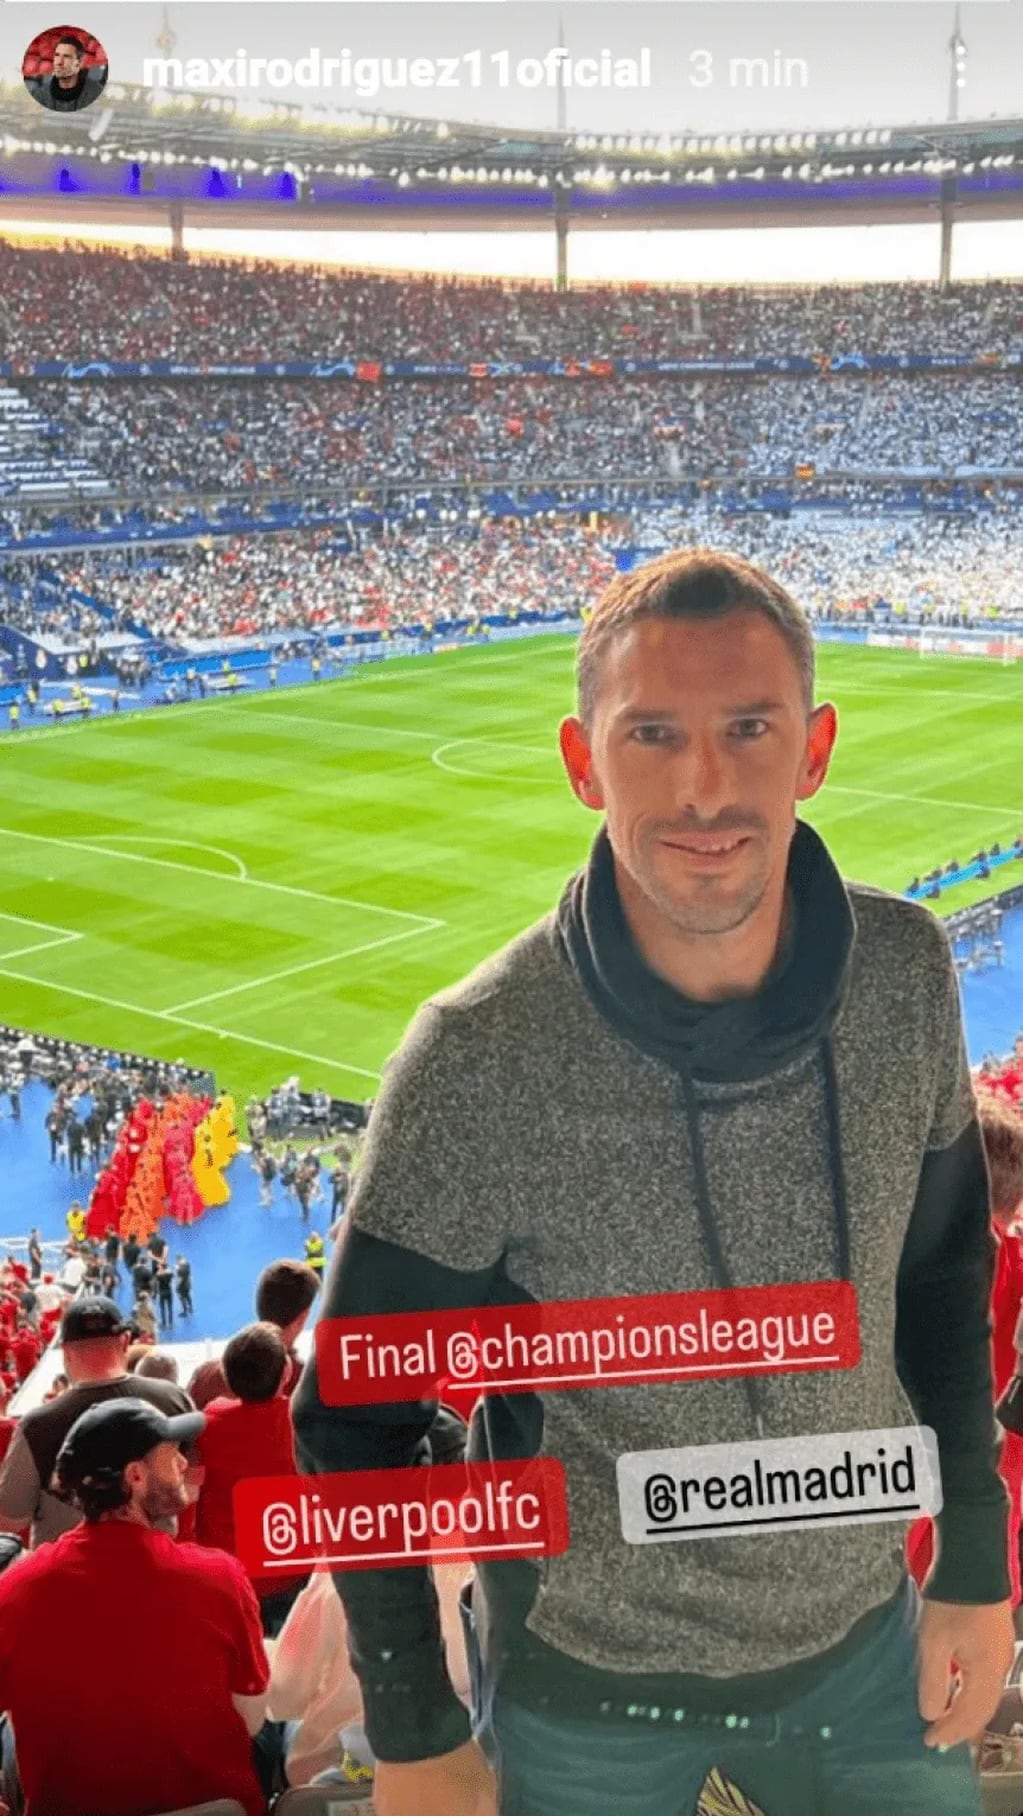 El ex jugador de la Selección Argentina, Maxi Rodríguez, también está presente en París, disfrutando la final de la Champions League. / Gentilez.a